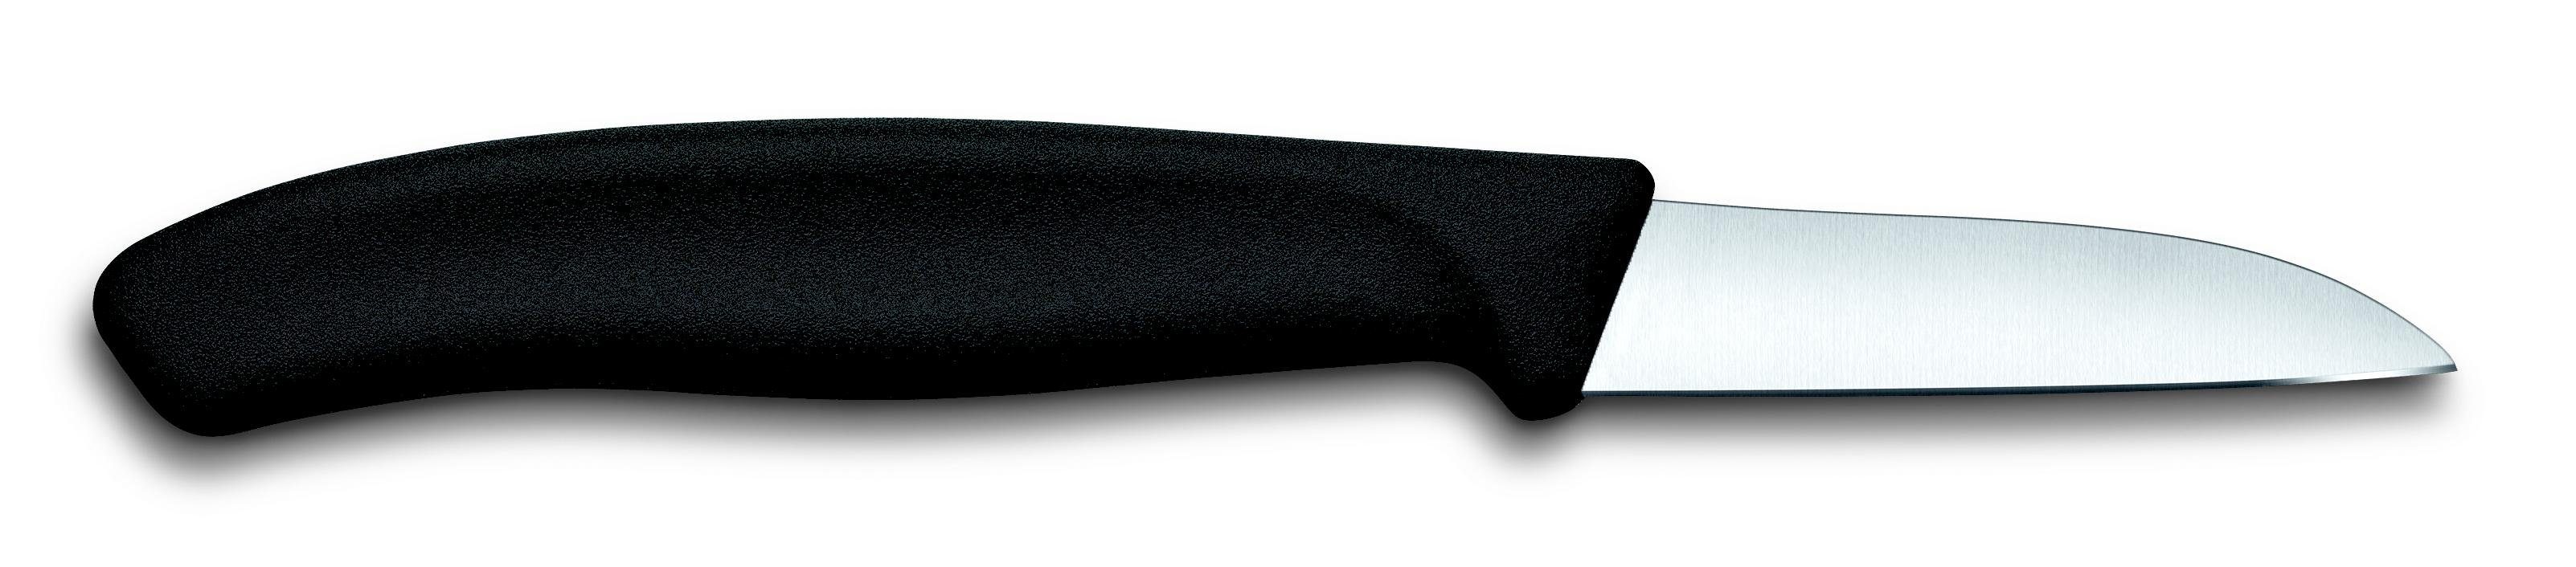 Victorinox Taschenmesser Swiss Classic Gemüsemesser, gerader Schnitt, 6cm, schwarz